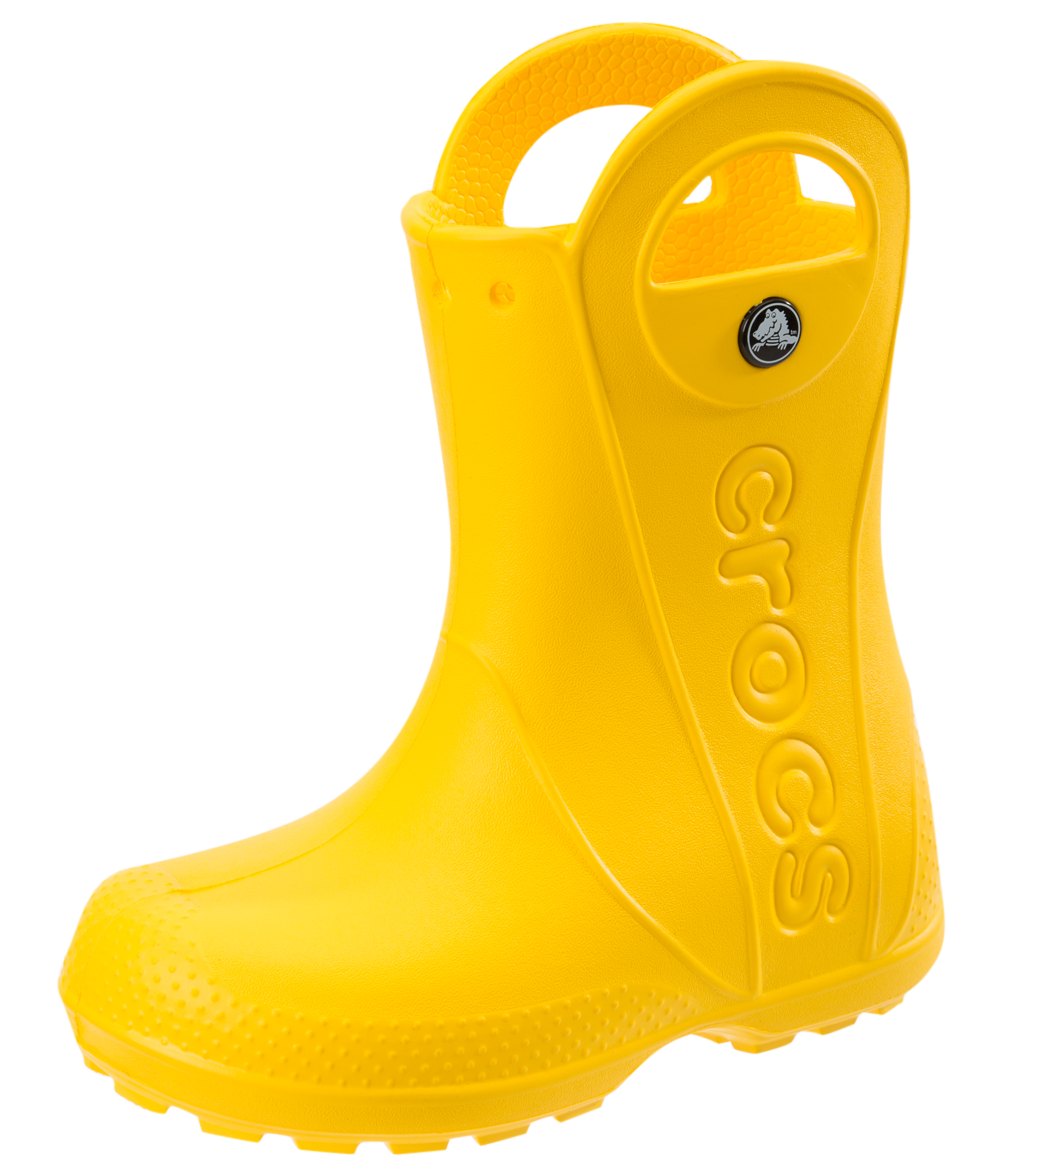 crocs rain boots review